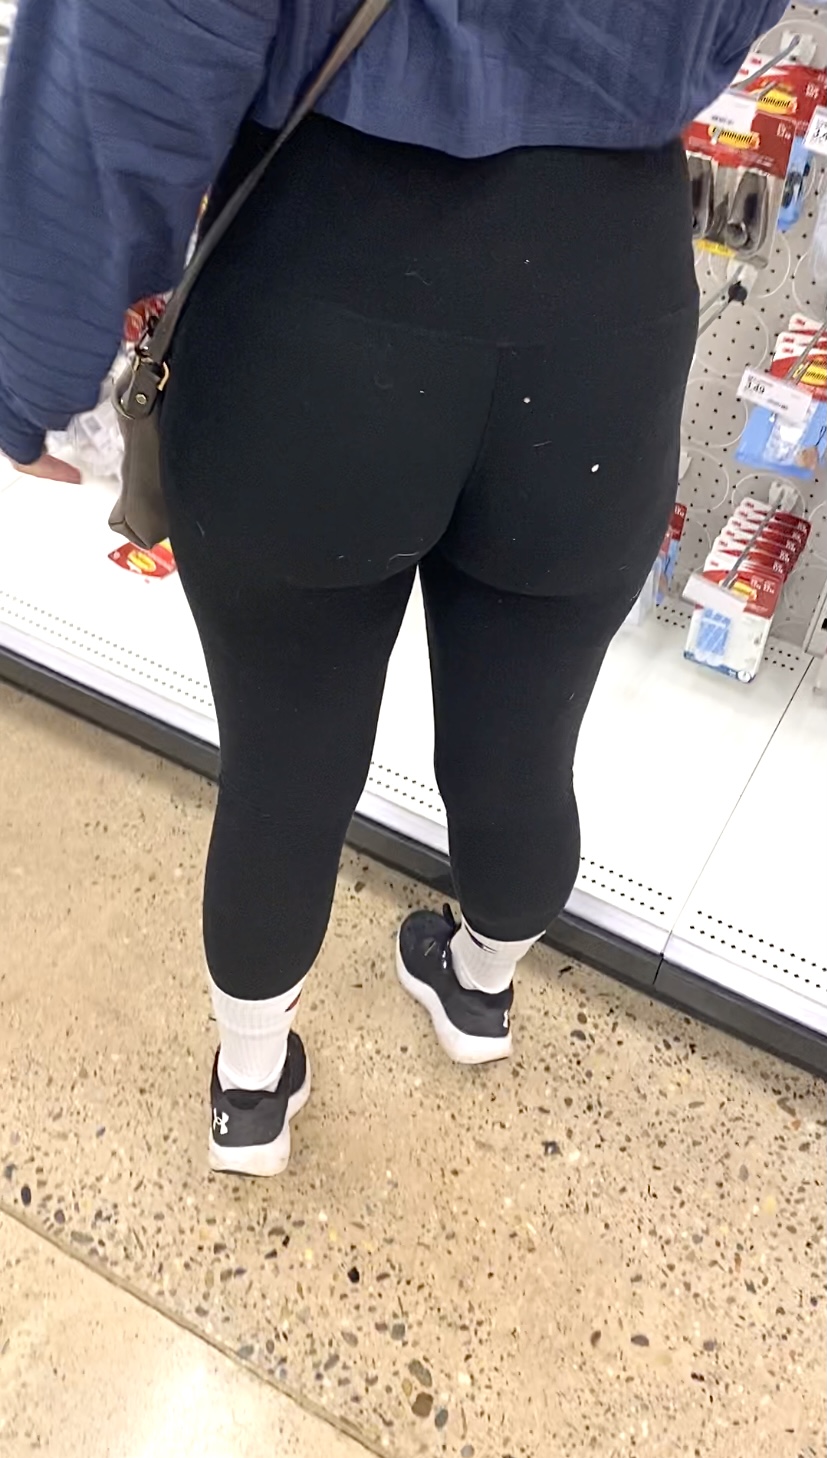 Juicy Ass Black Leggings Vtl At Target Spandex Leggings And Yoga Pants Forum 